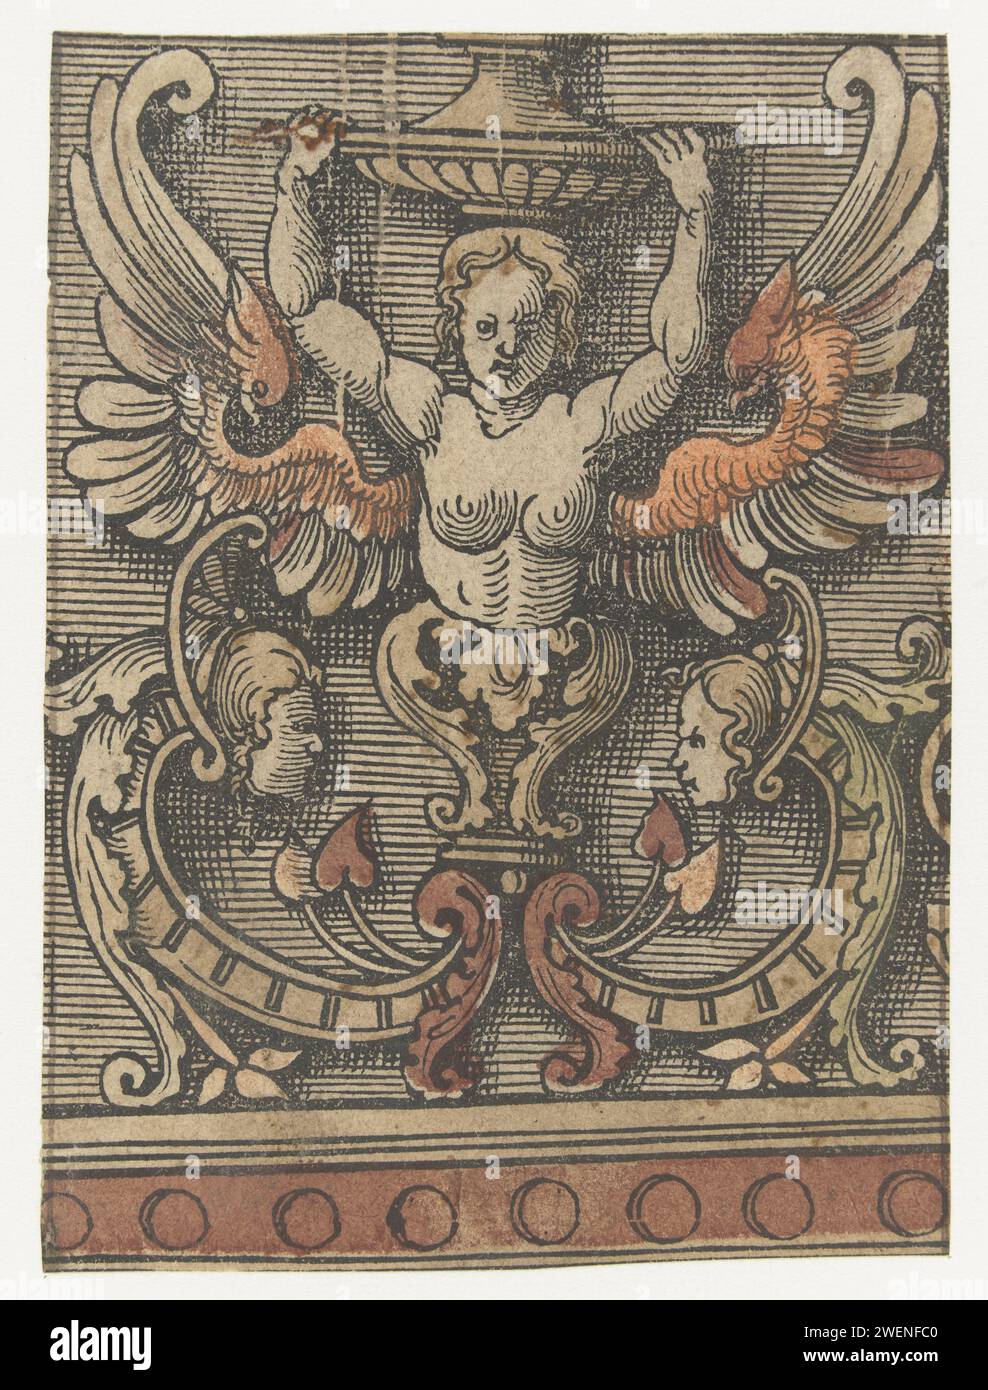 Ornament mit geflügelter Frau, 1504 - 1533 Druck Fragment der Liste der Zierdekorationen. Papierschmuck  hybride Wesen; menschliche und tierische Formen gemischt Stockfoto